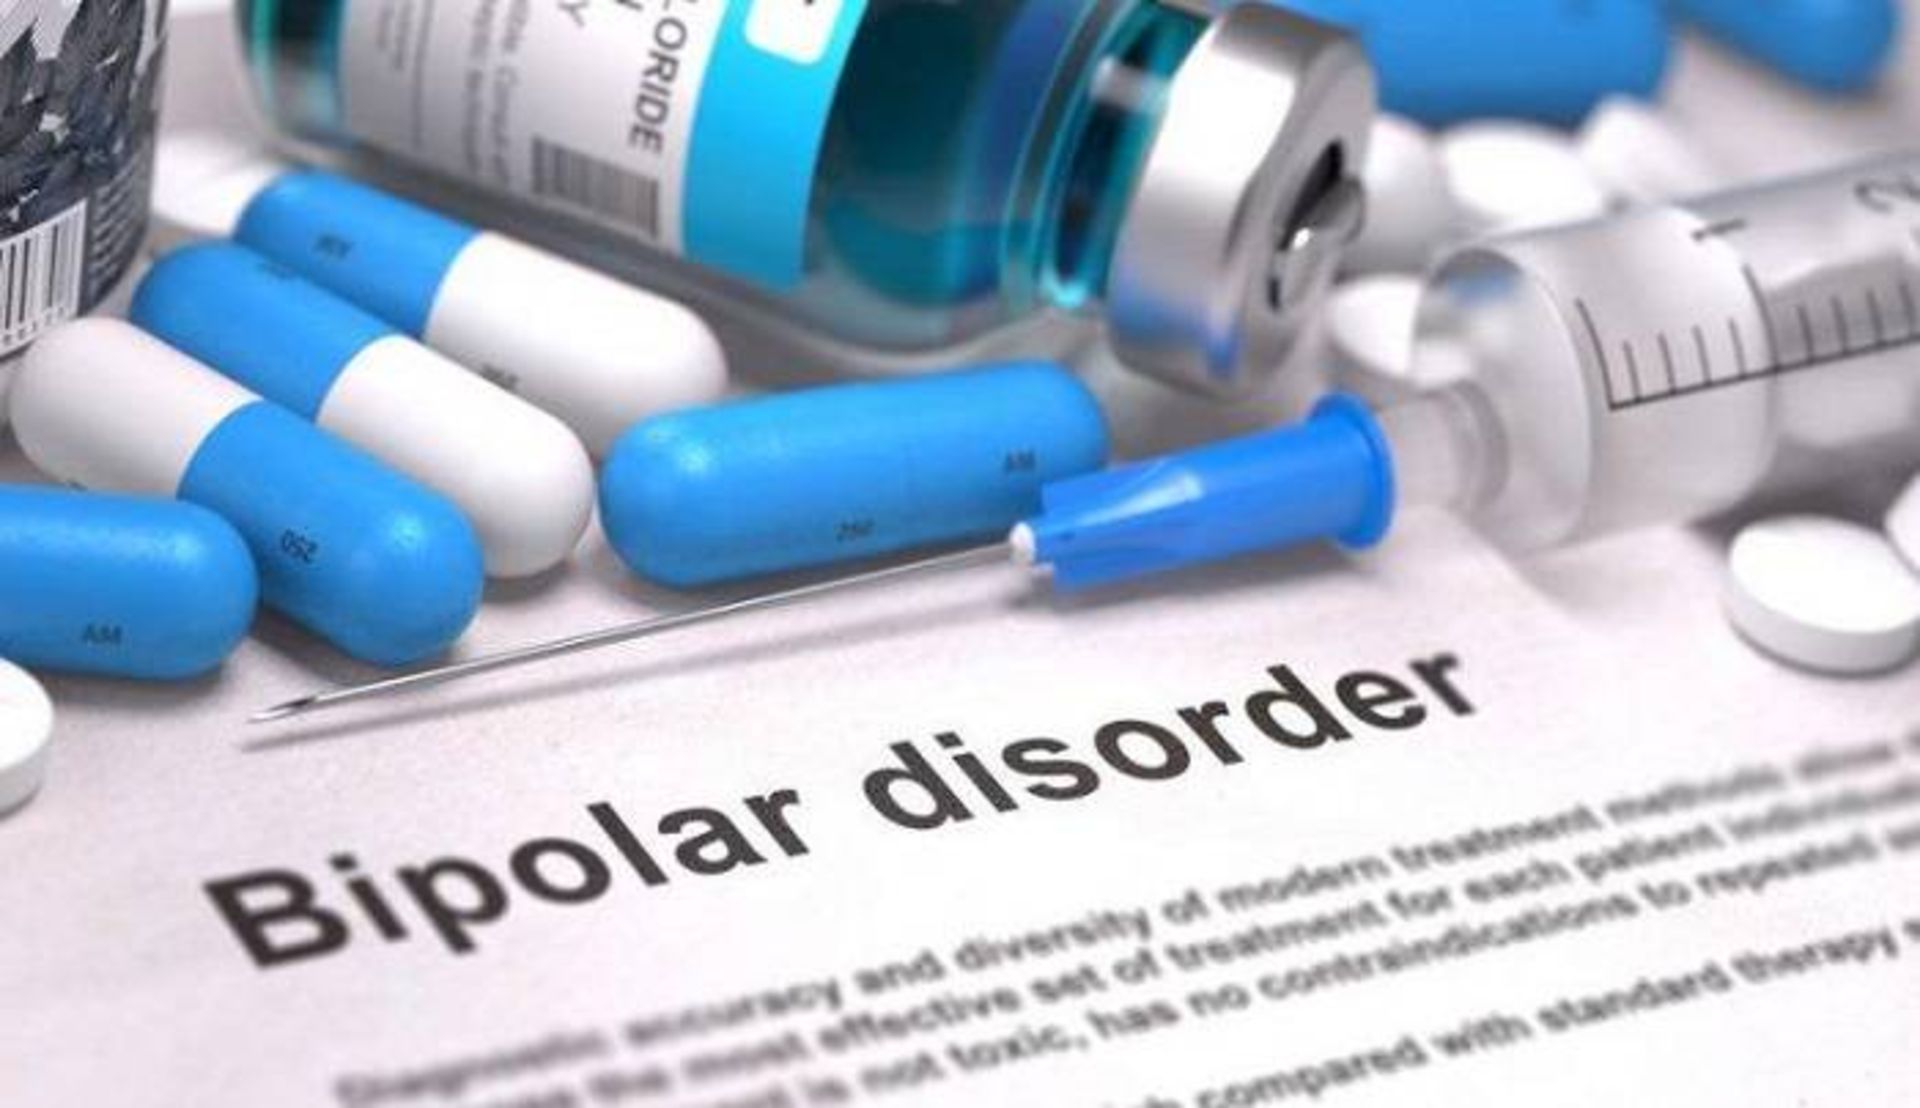 داروهای درمان اختلال دو قطبی / bipolar disorder drugs